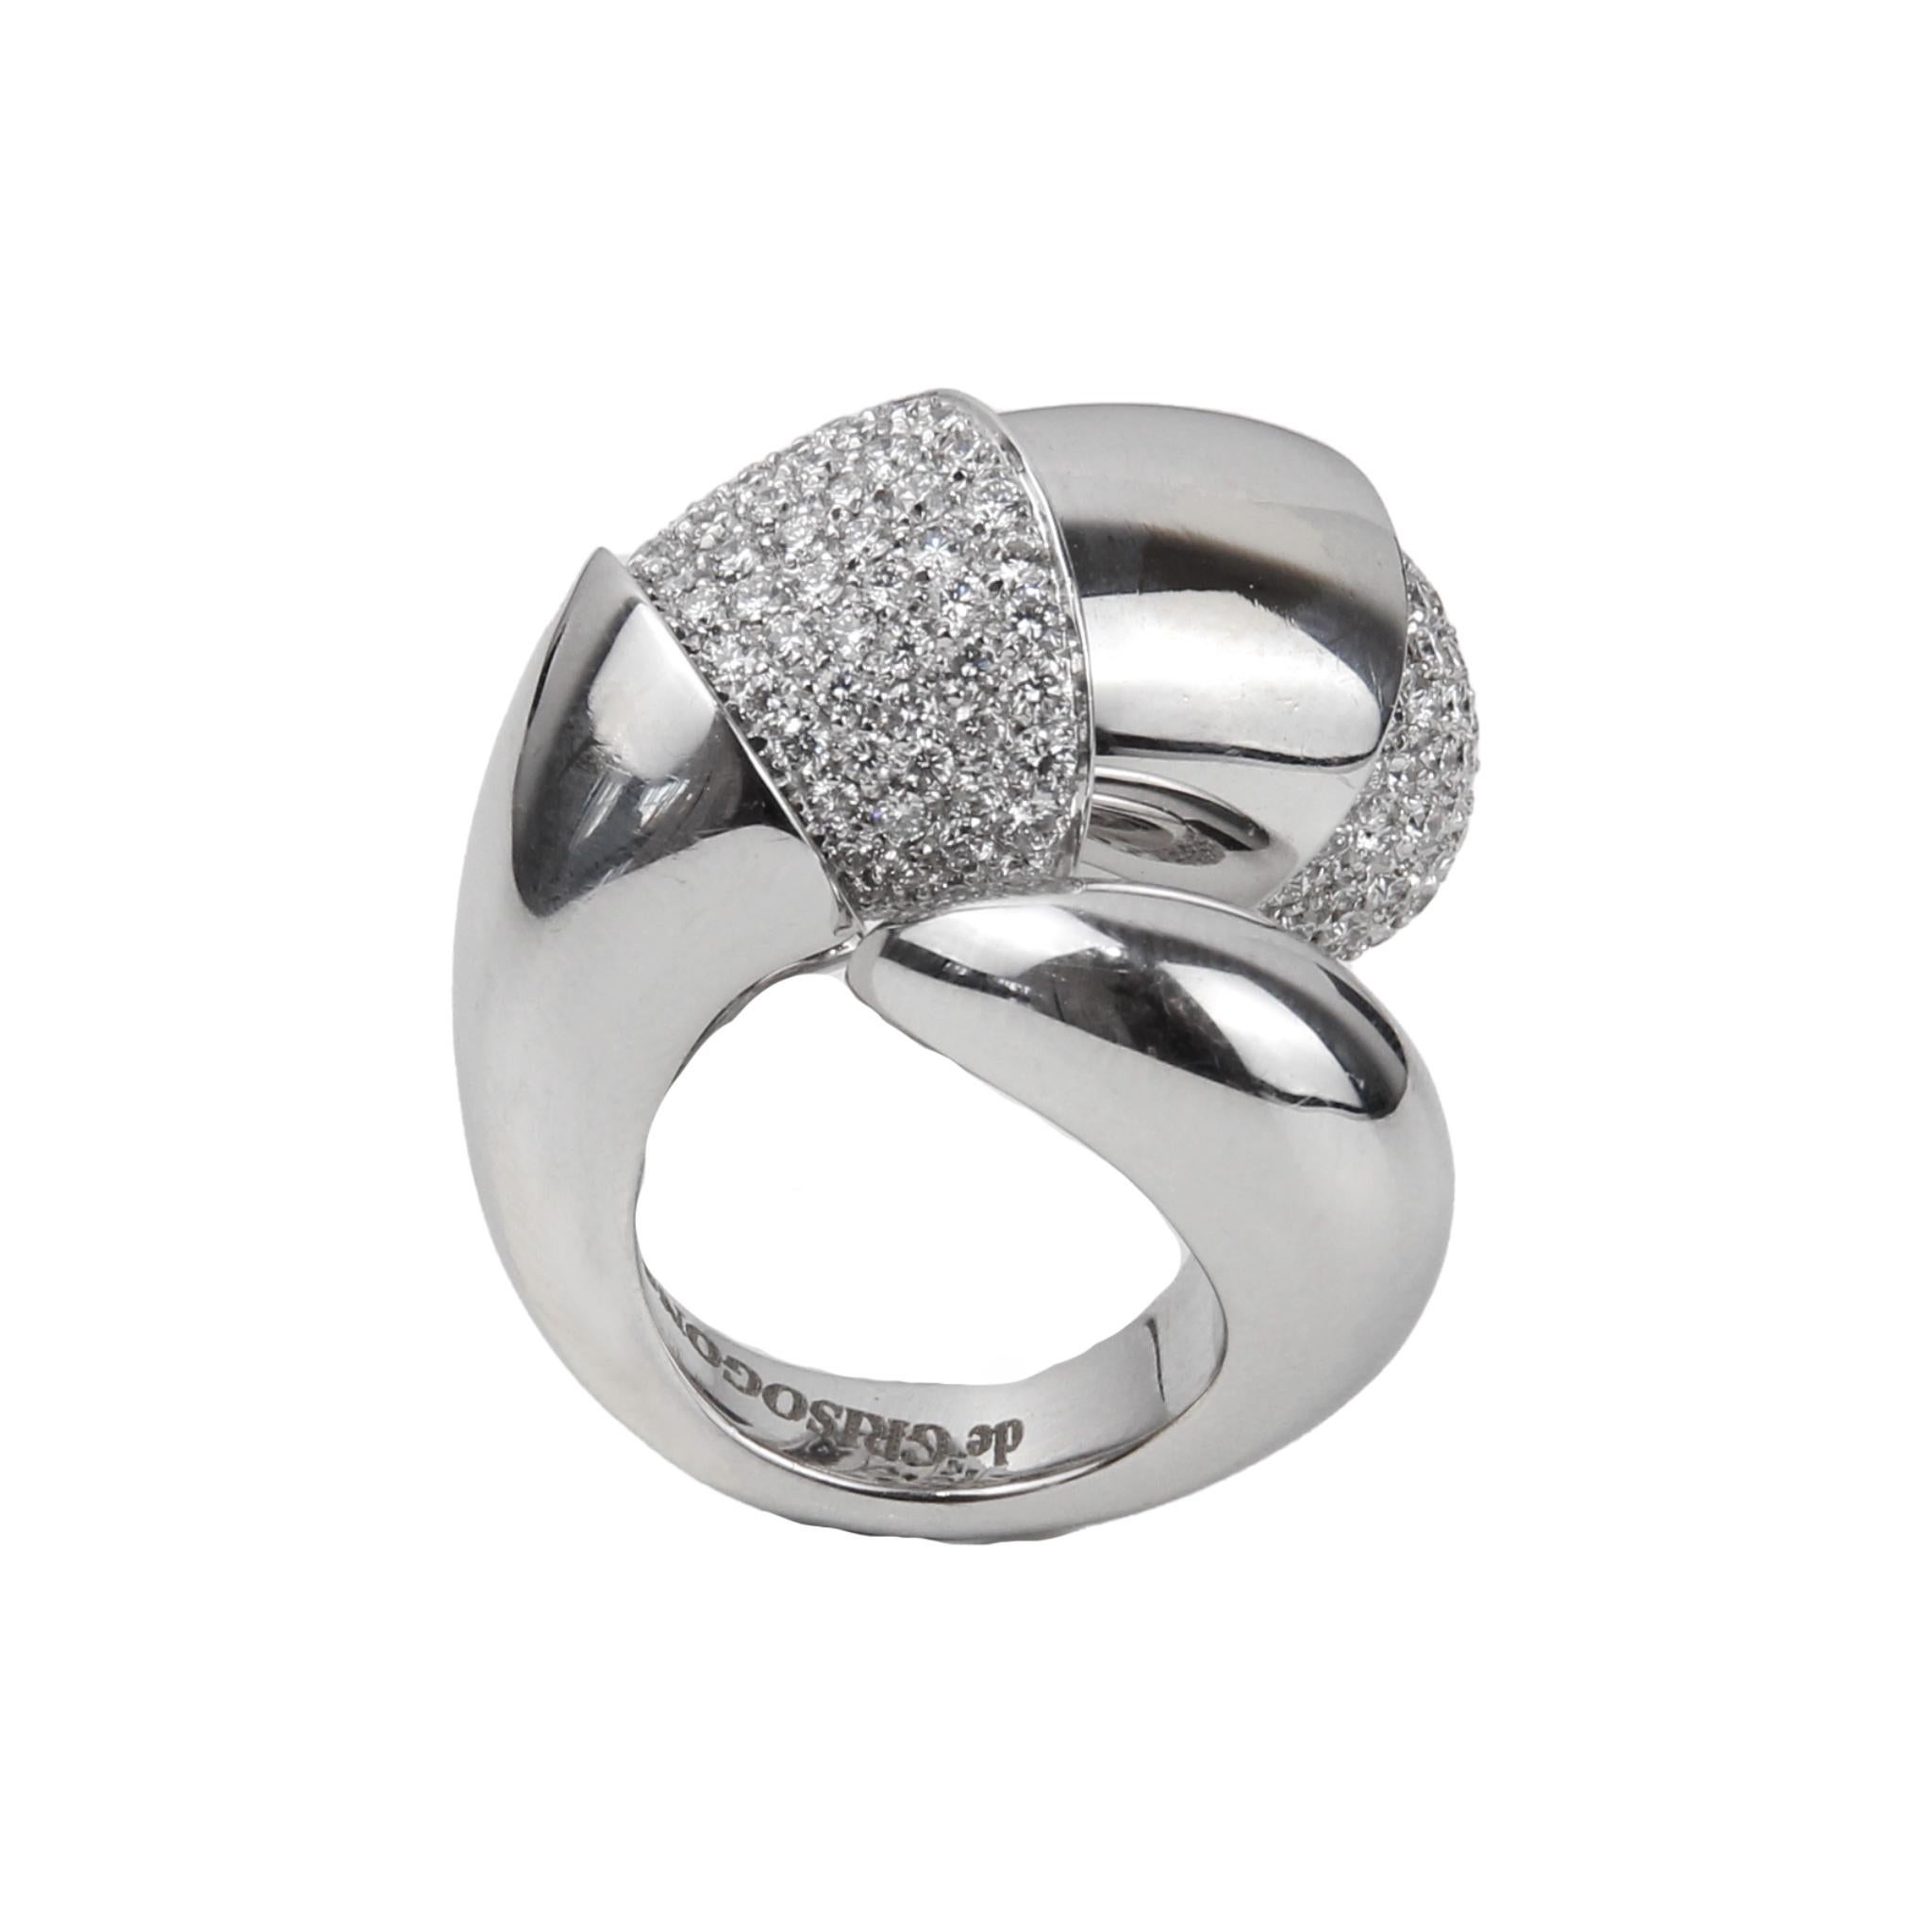 Brilliant Cut De Grissogono 18k White Gold Diamond Ring For Sale